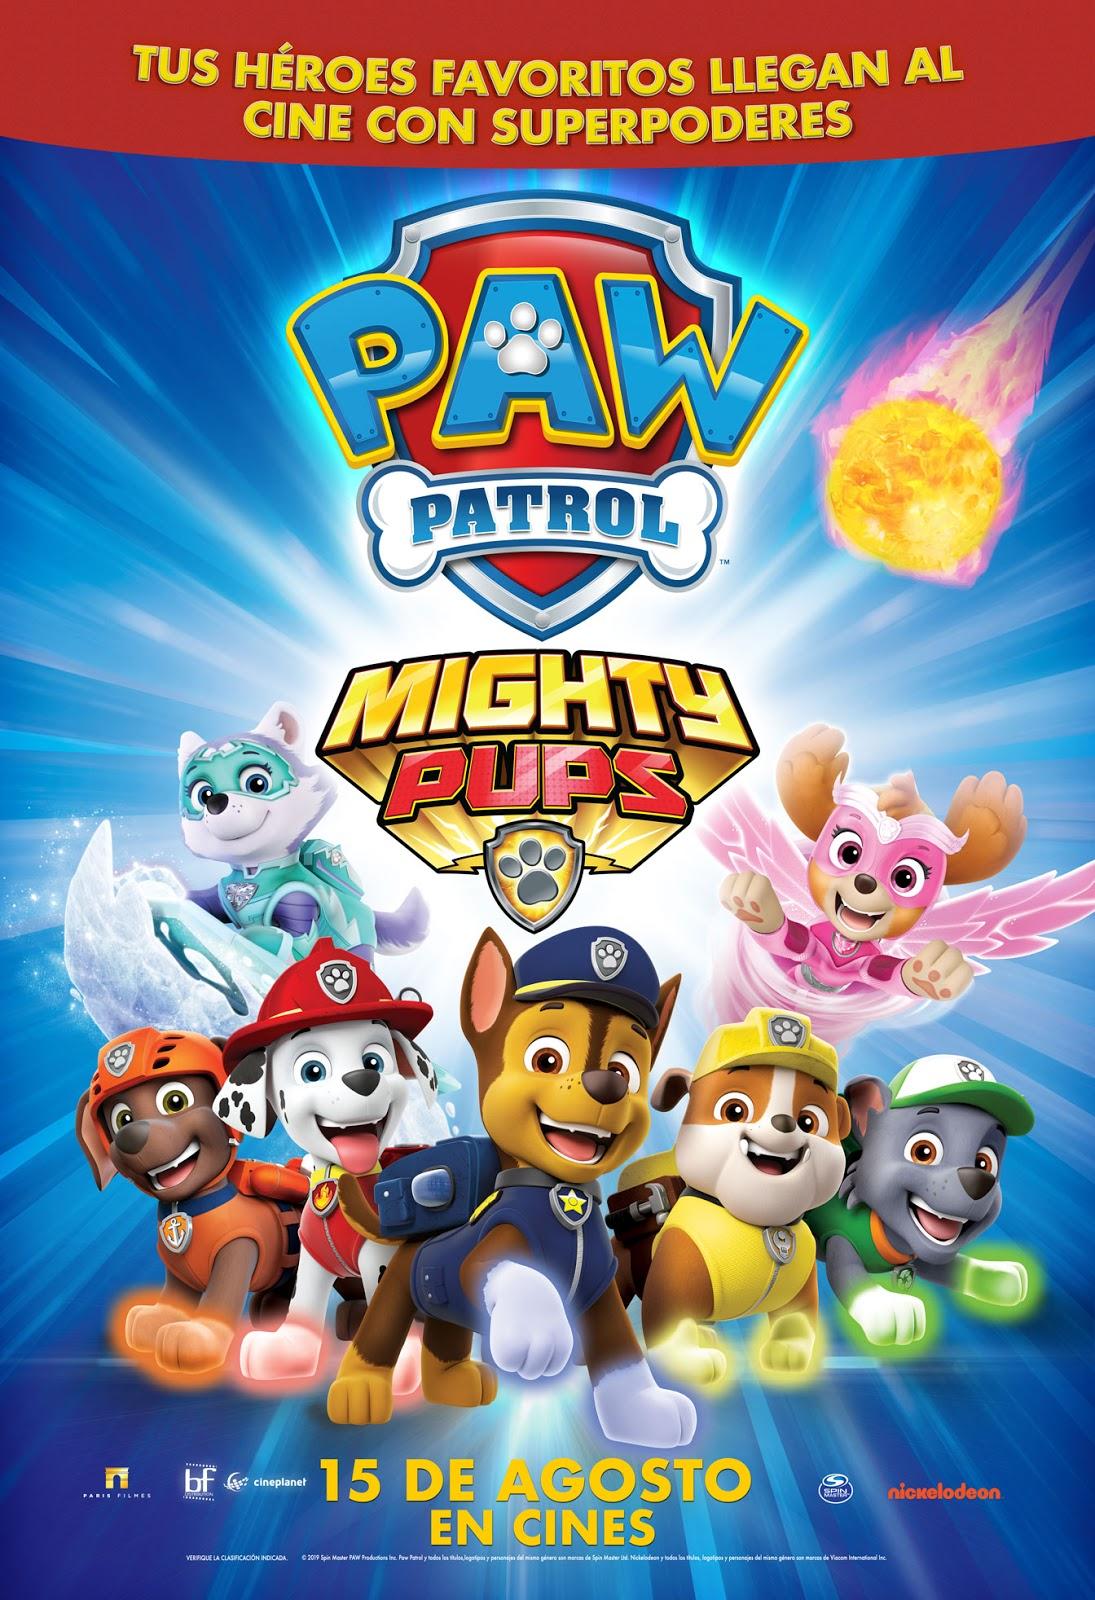 NickALive!: Nickelodeon Latin America to Debut 'Paw Patrol